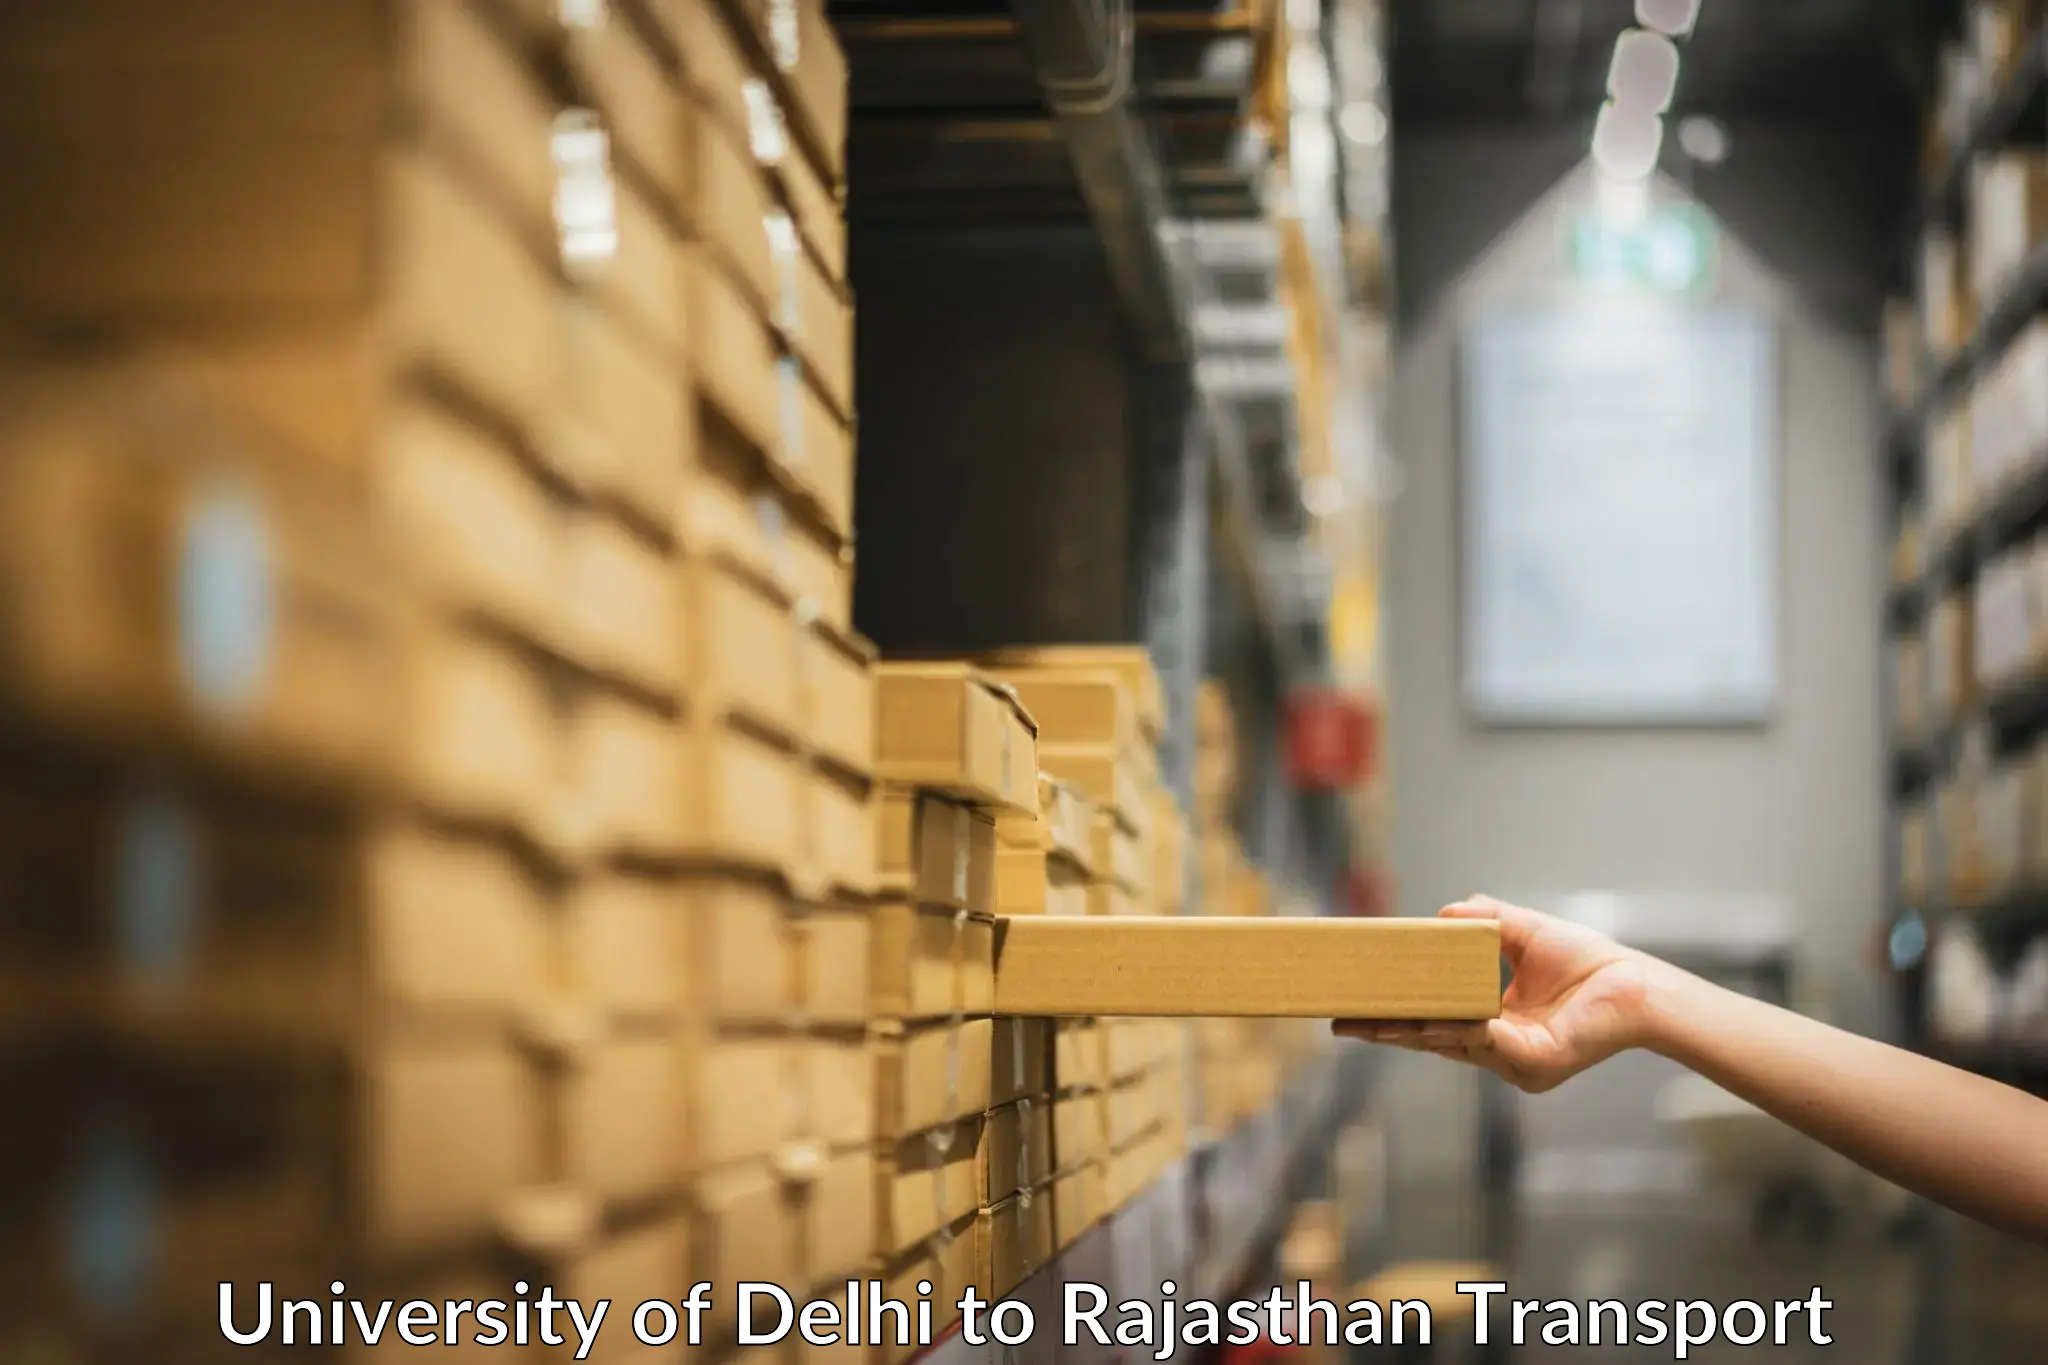 Daily transport service University of Delhi to Phalodi